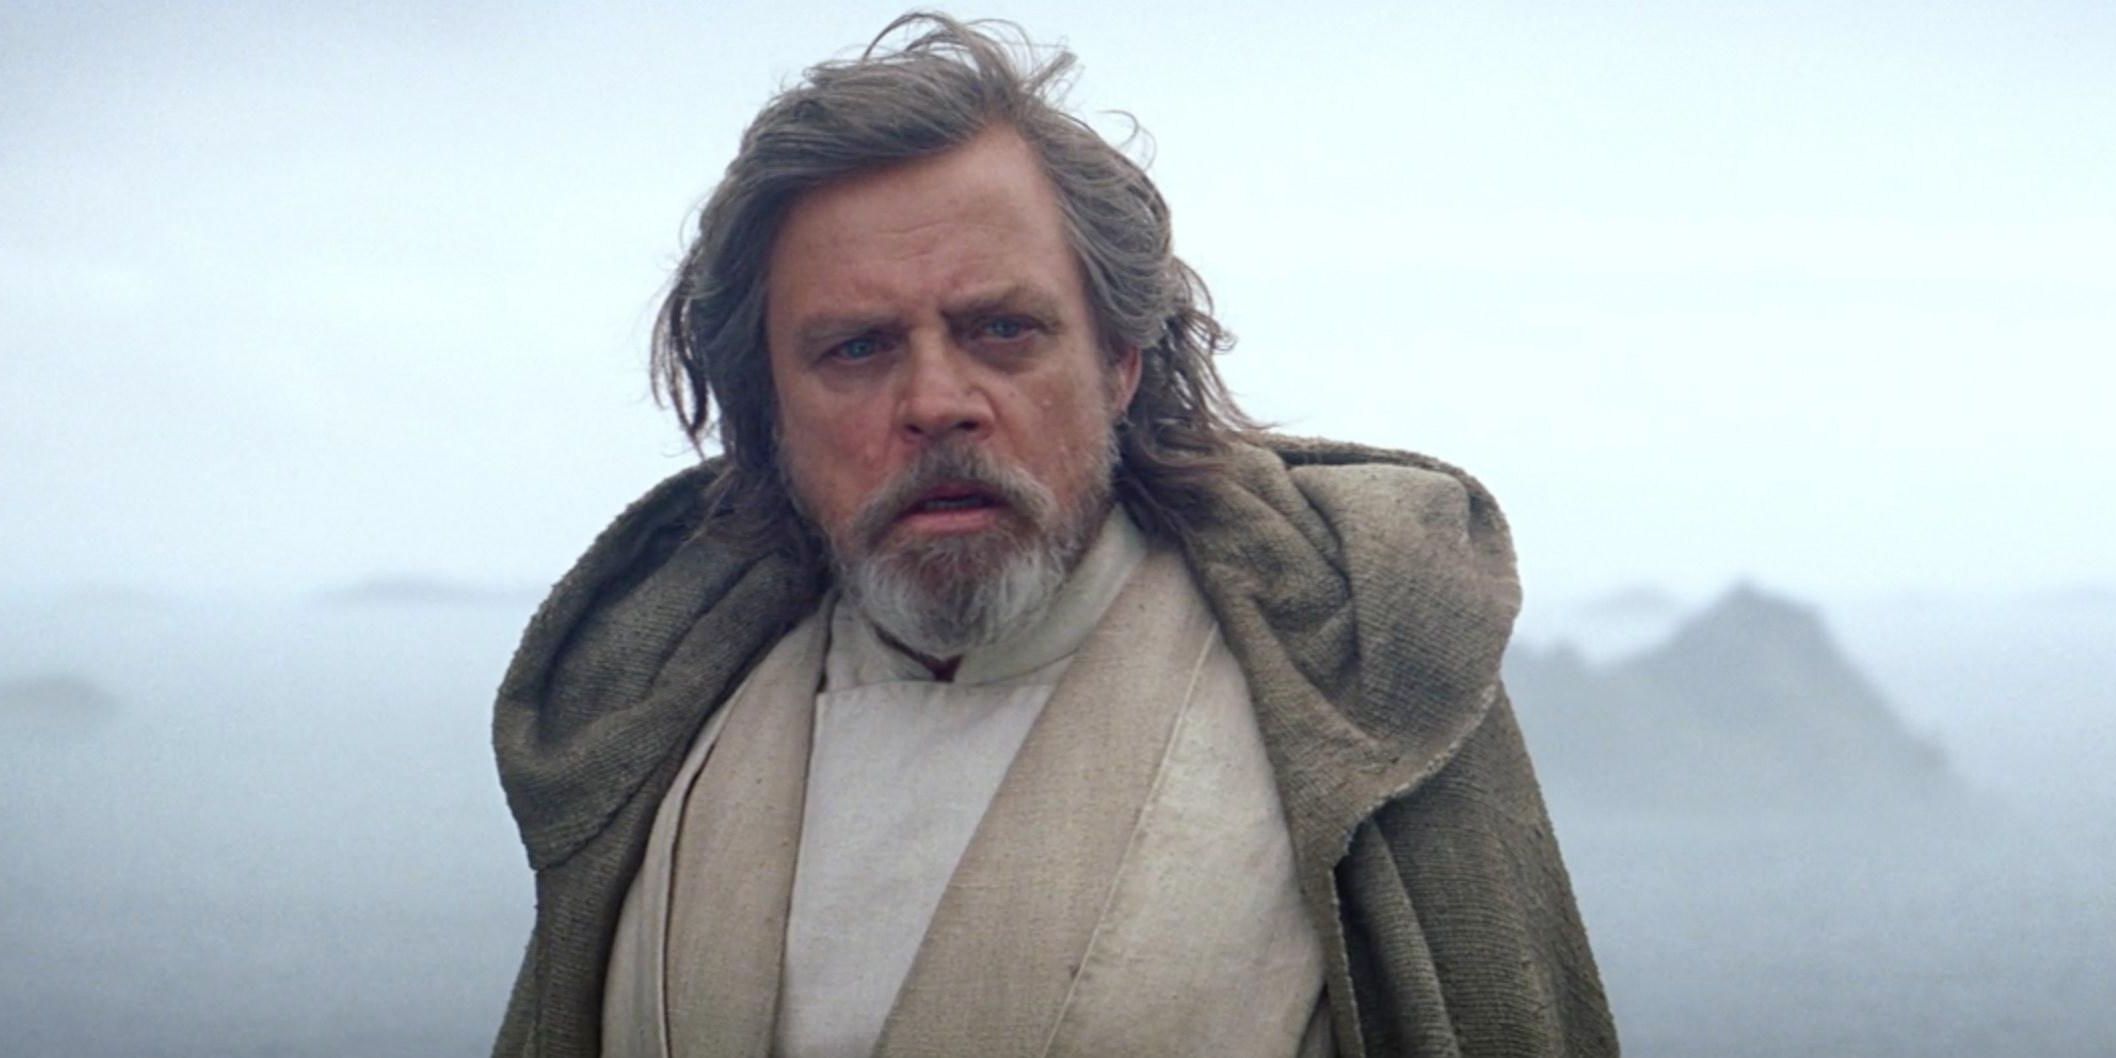 Luke Skywalker on Ahch-To in Star Wars The Last Jedi.